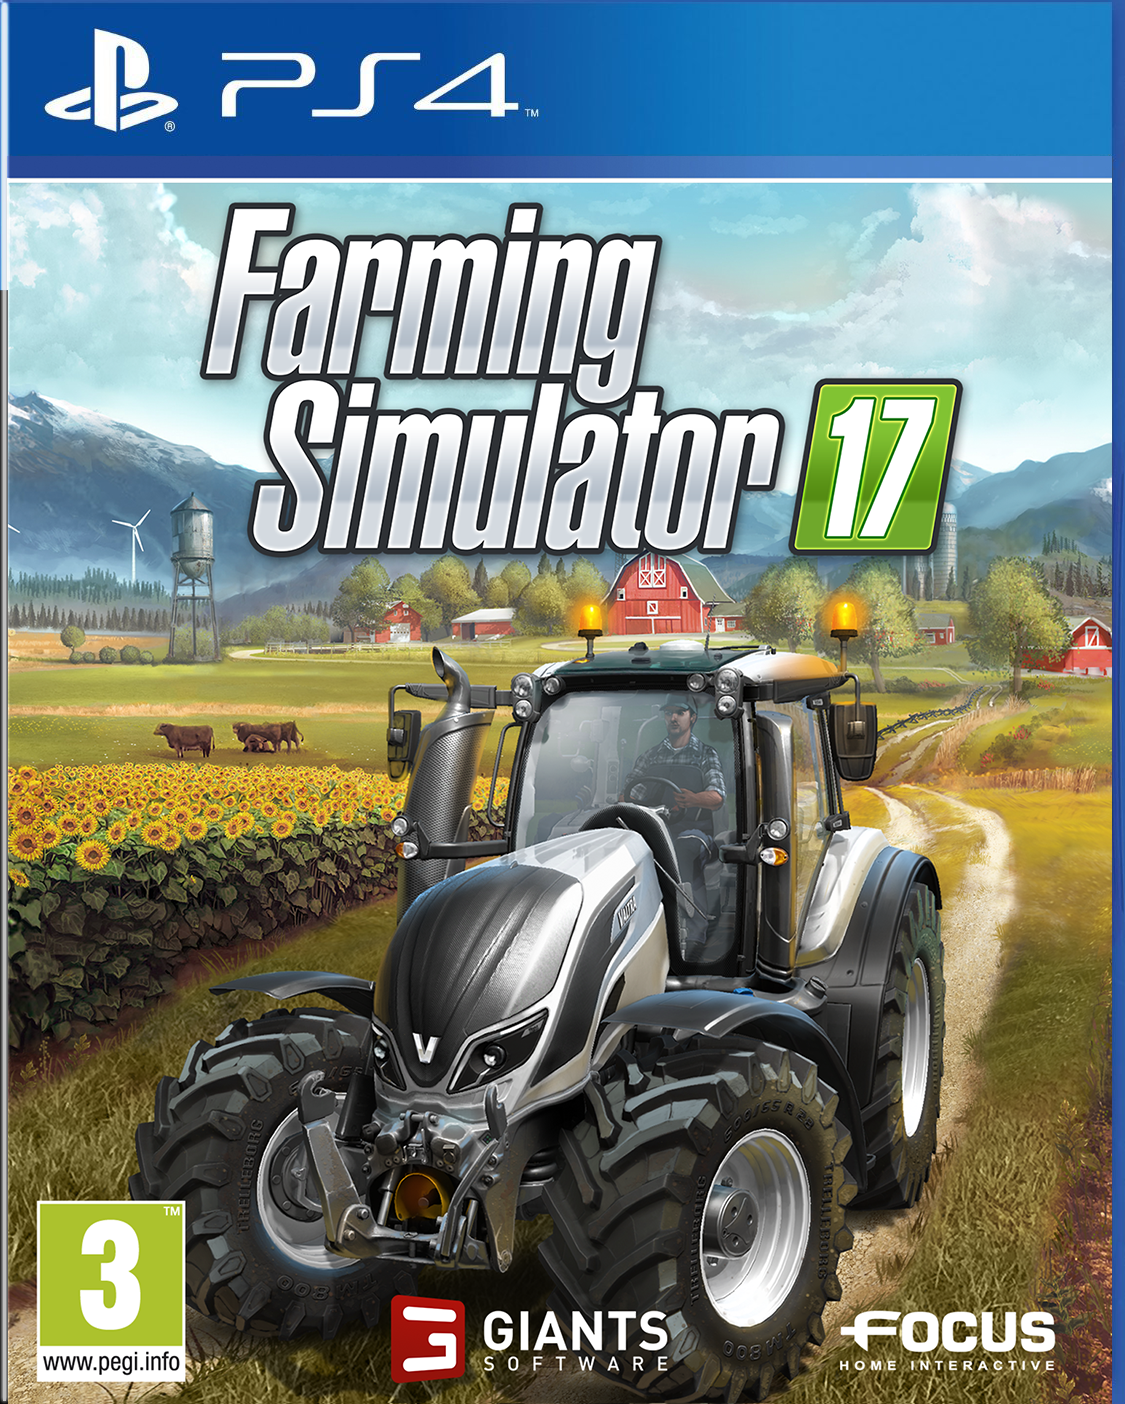 Résultat de recherche d'images pour "farming simulator 2017 cover"